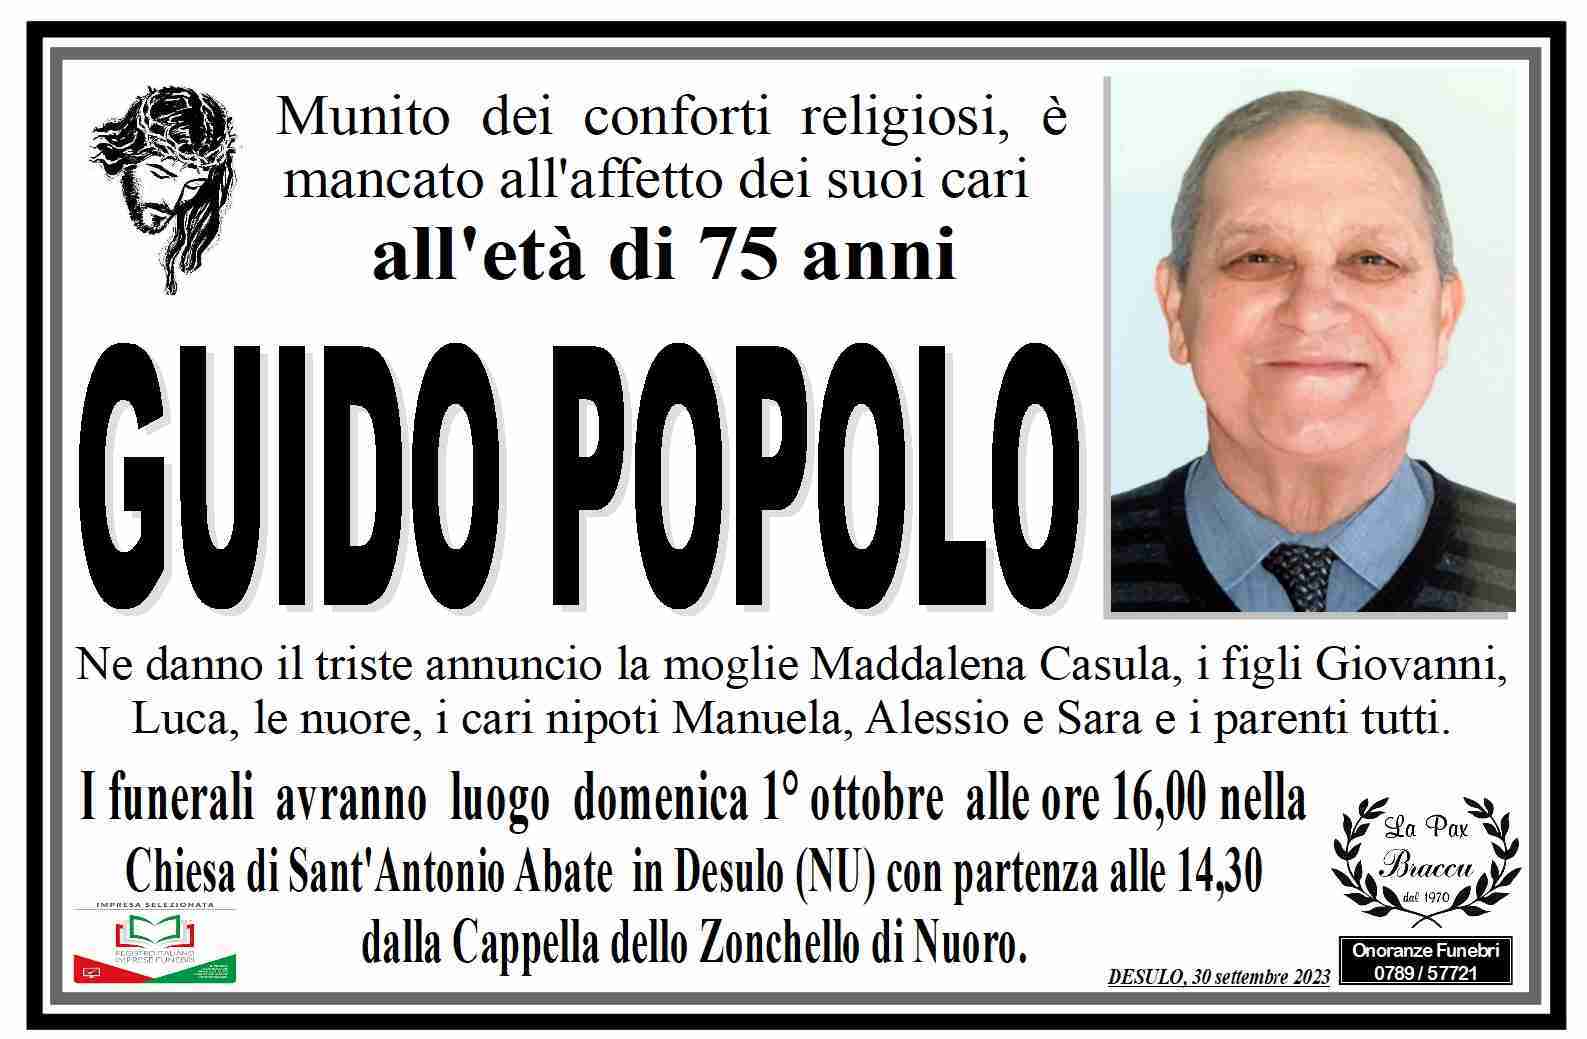 Guido Popolo